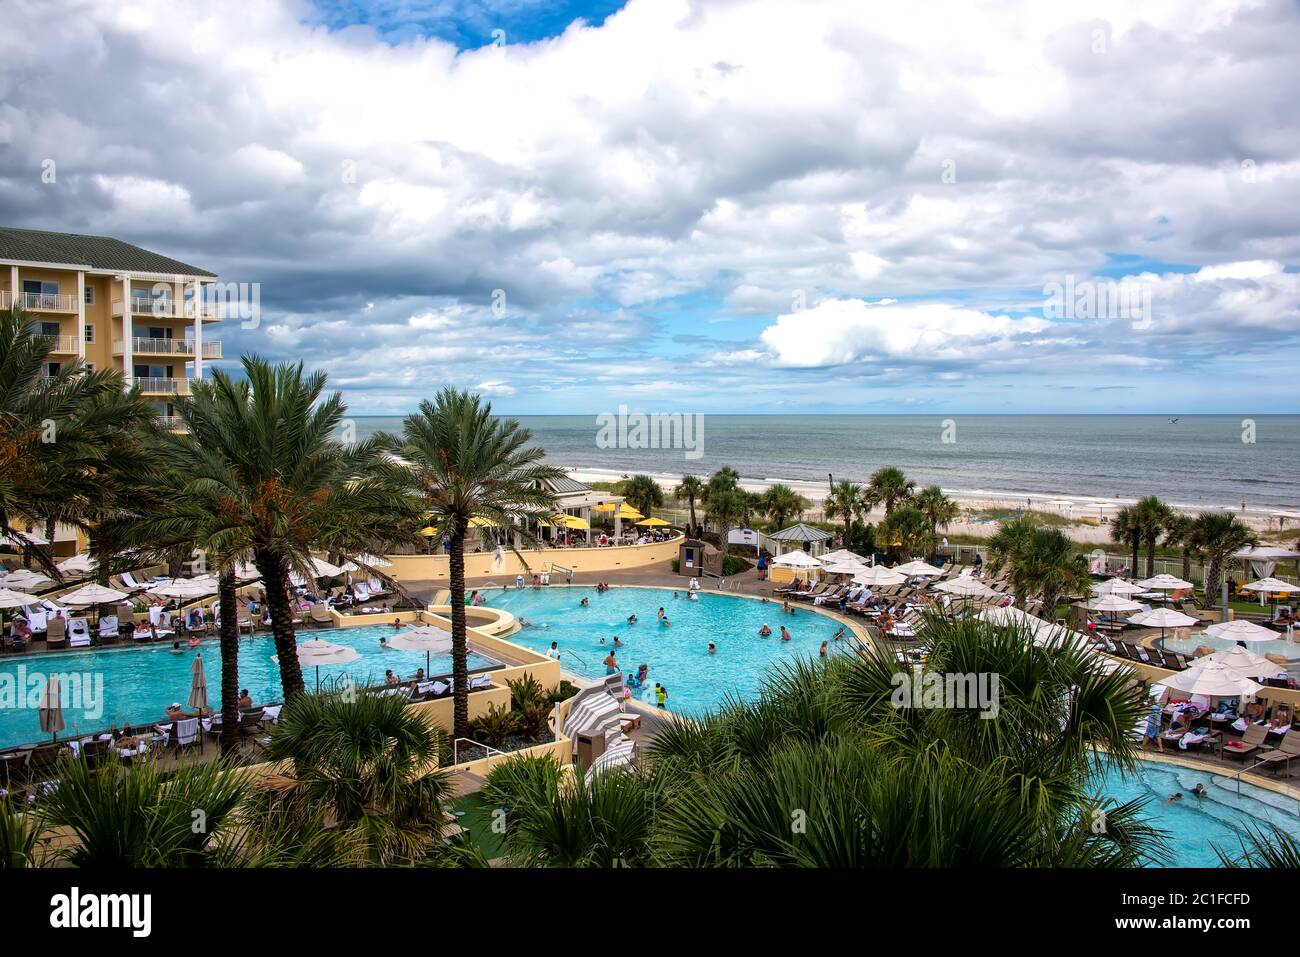 Amelia Island, Floride - 16 août 2019 : les touristes qui aiment passer une journée dans la piscine dans un hôtel de luxe sur la plage de Fernandina, sur la belle île d'Amelia Banque D'Images